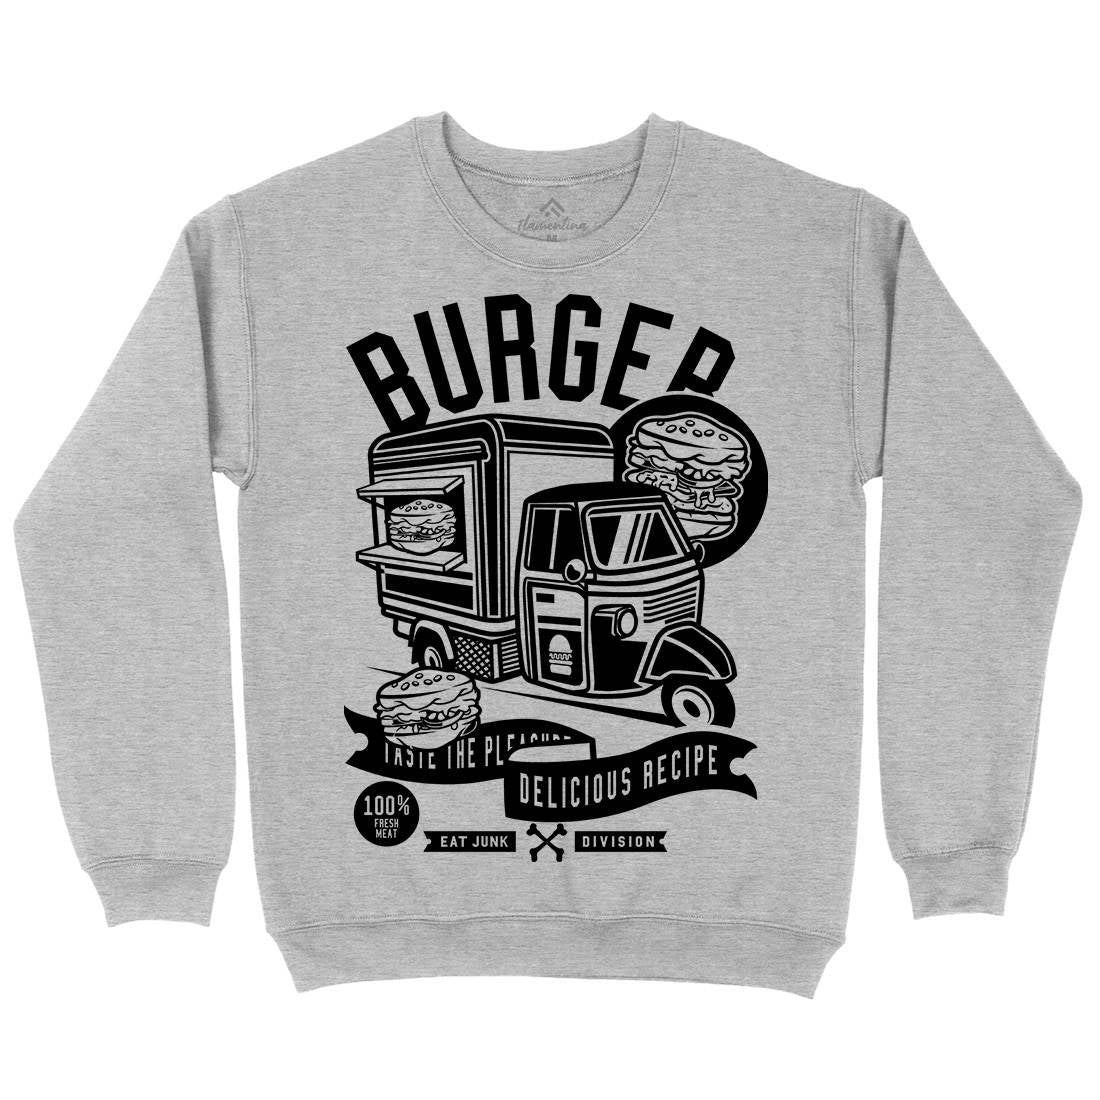 Burger Van Kids Crew Neck Sweatshirt Food B509